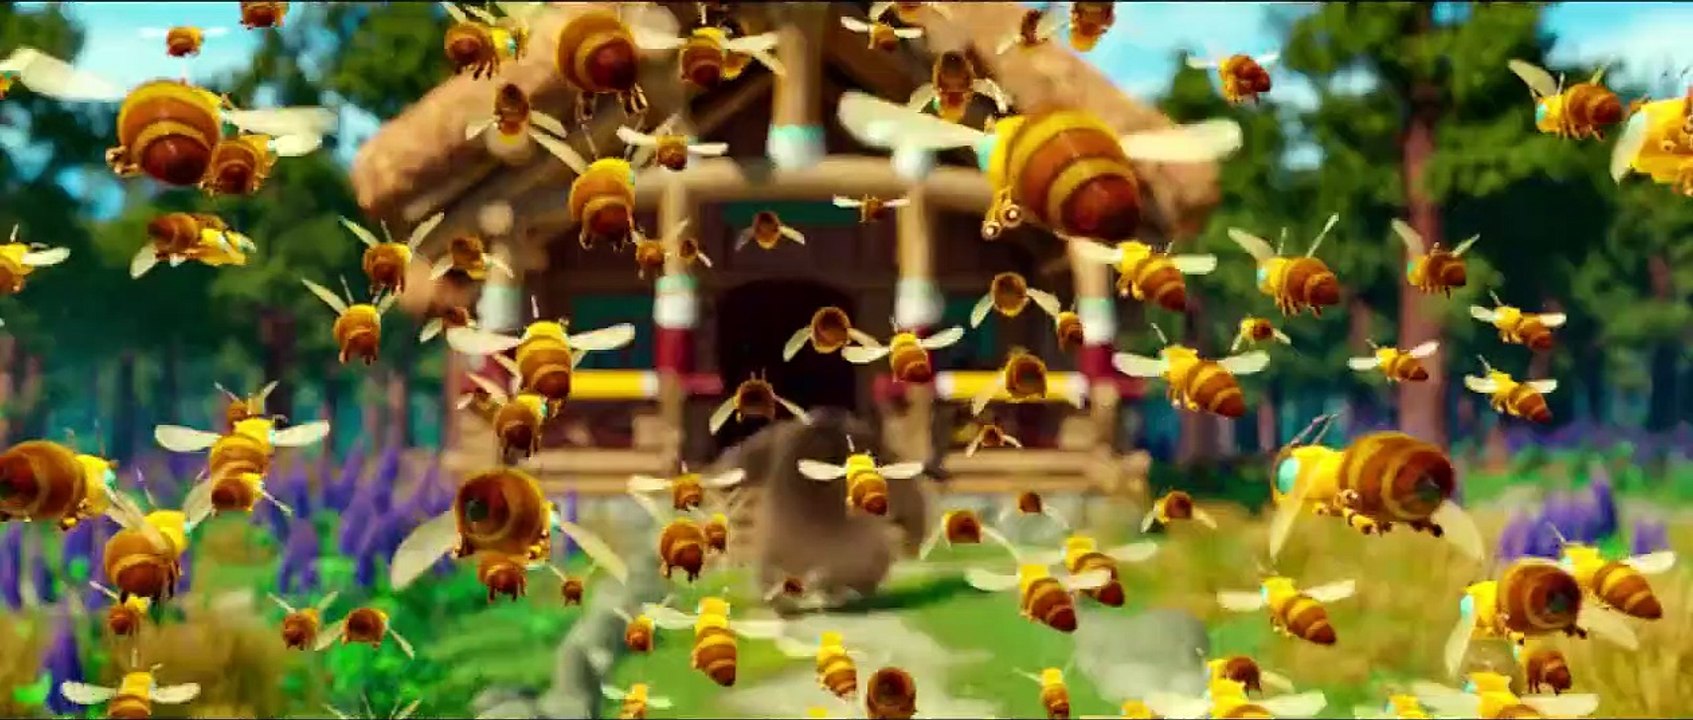 Mission Panda - Ein tierisches Team Trailer DF